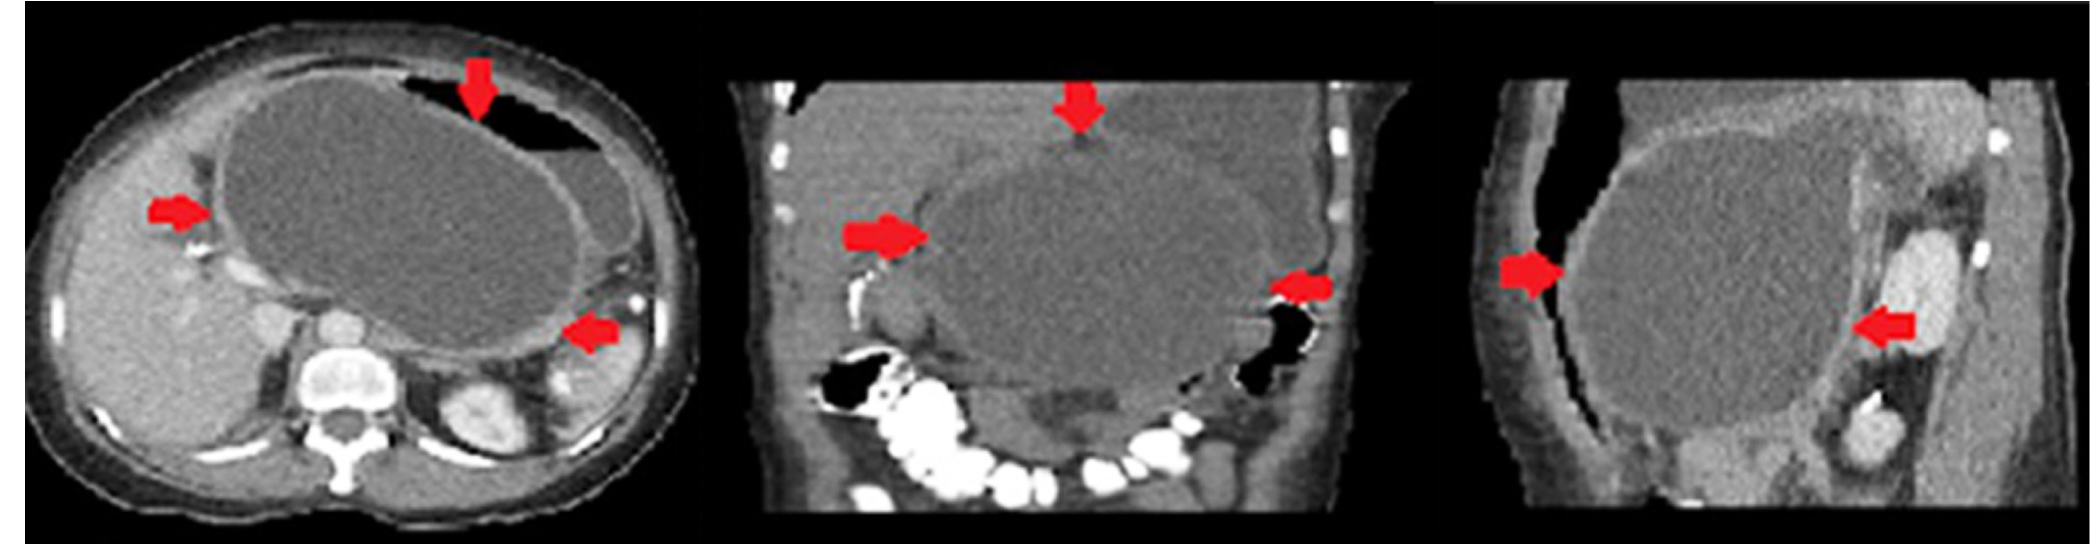 Figura 1. Tomografía computarizada de abdomen y pelvis